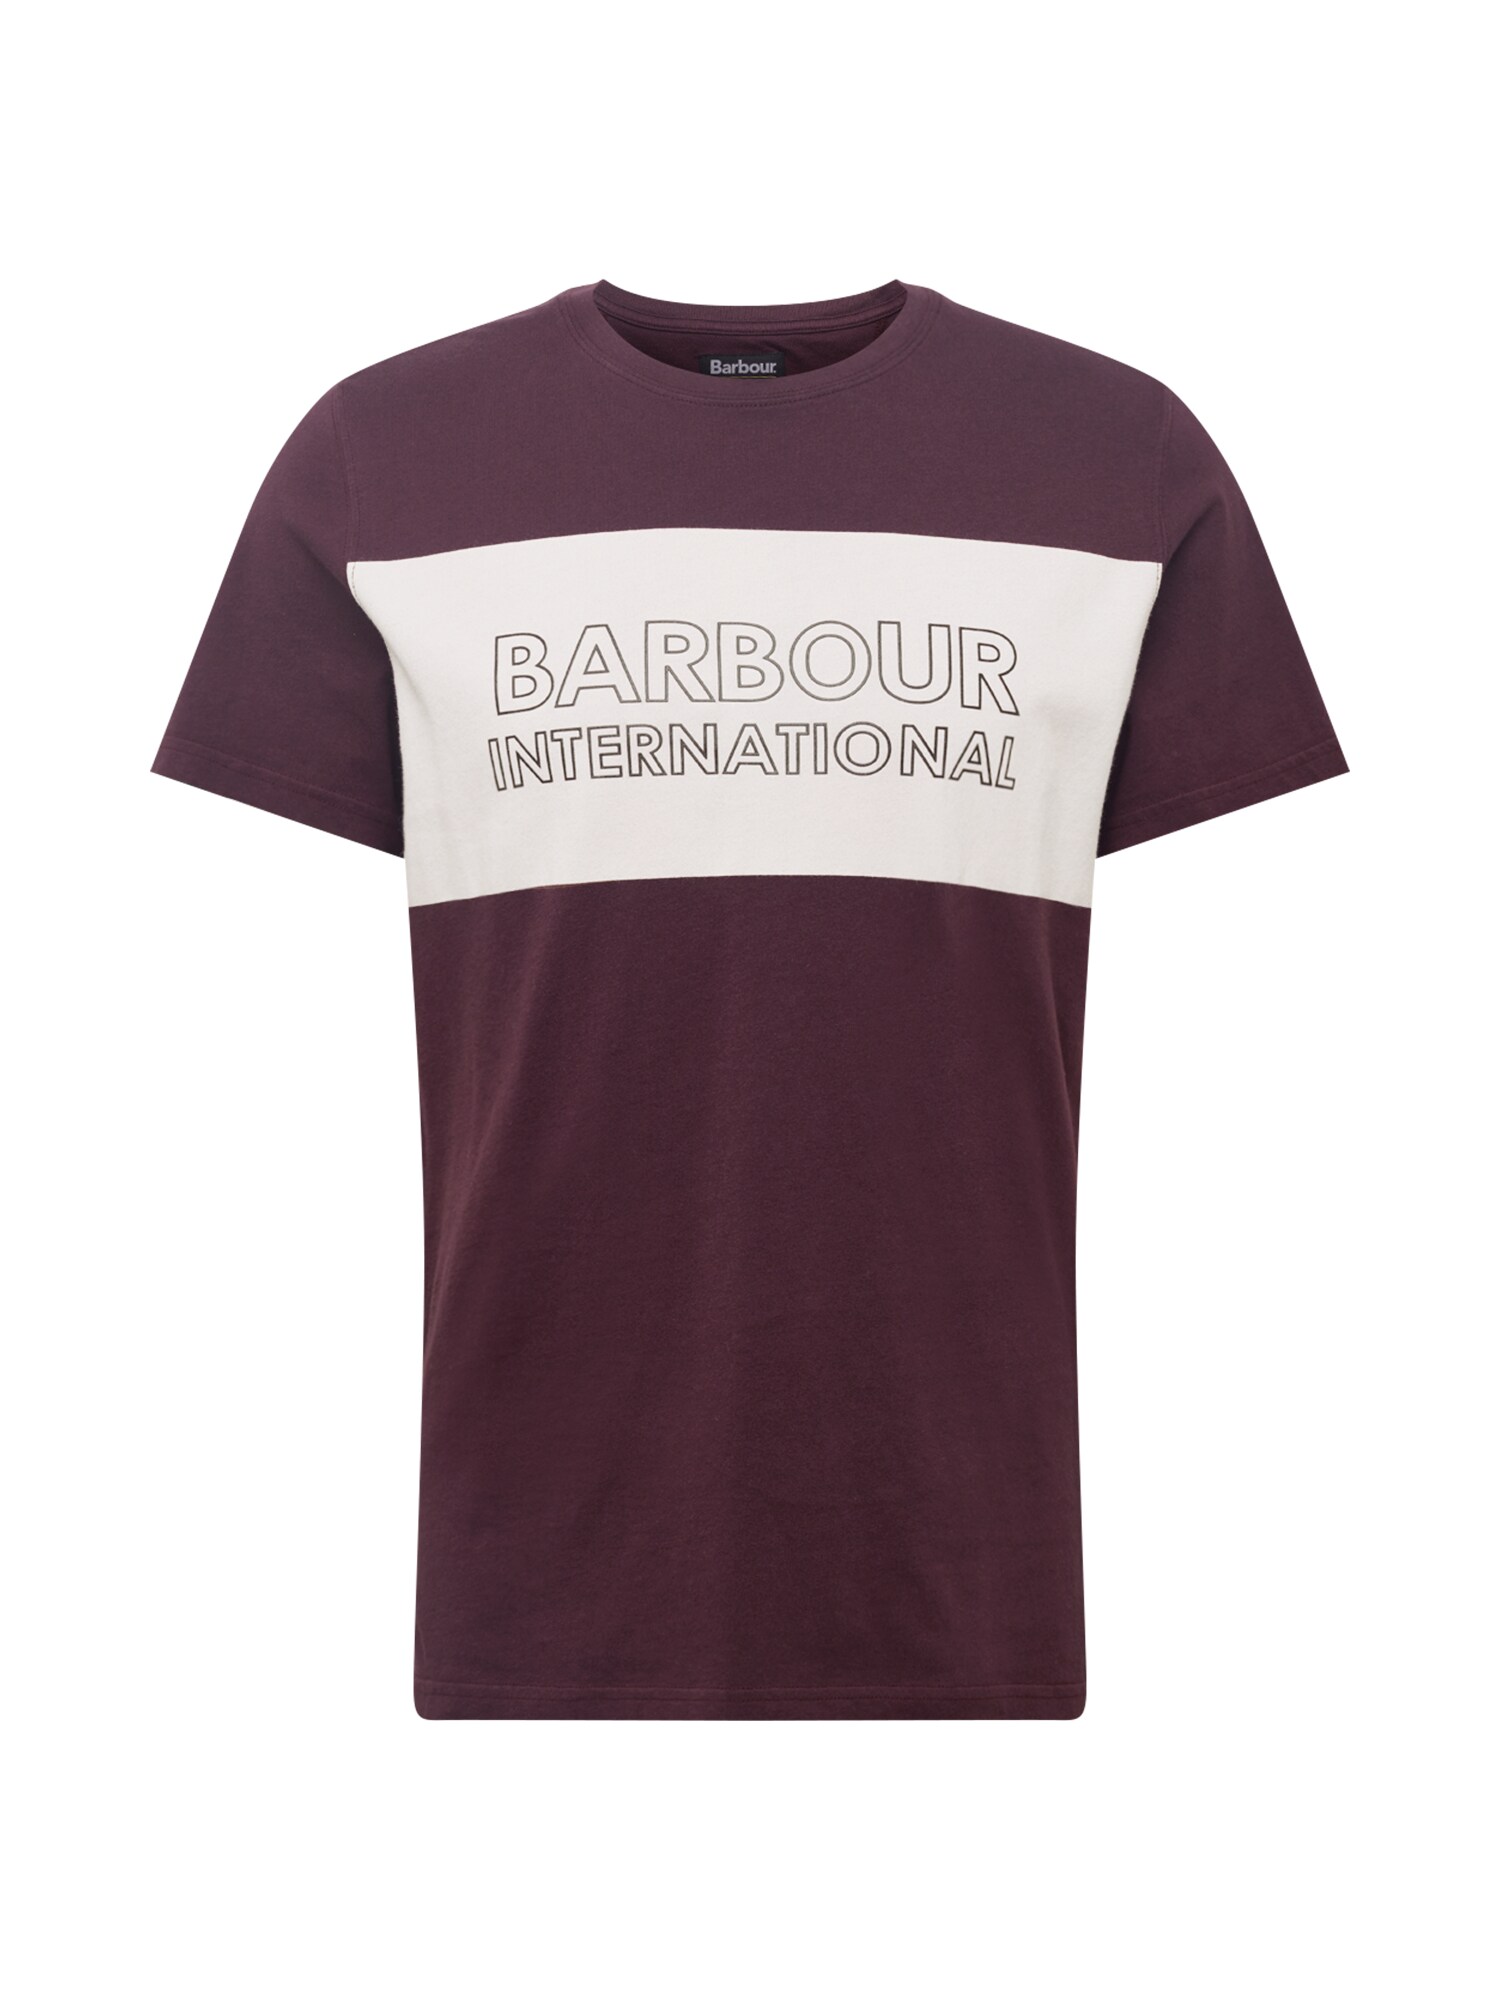 Barbour International Marškinėliai  burgundiško vyno spalva / balta